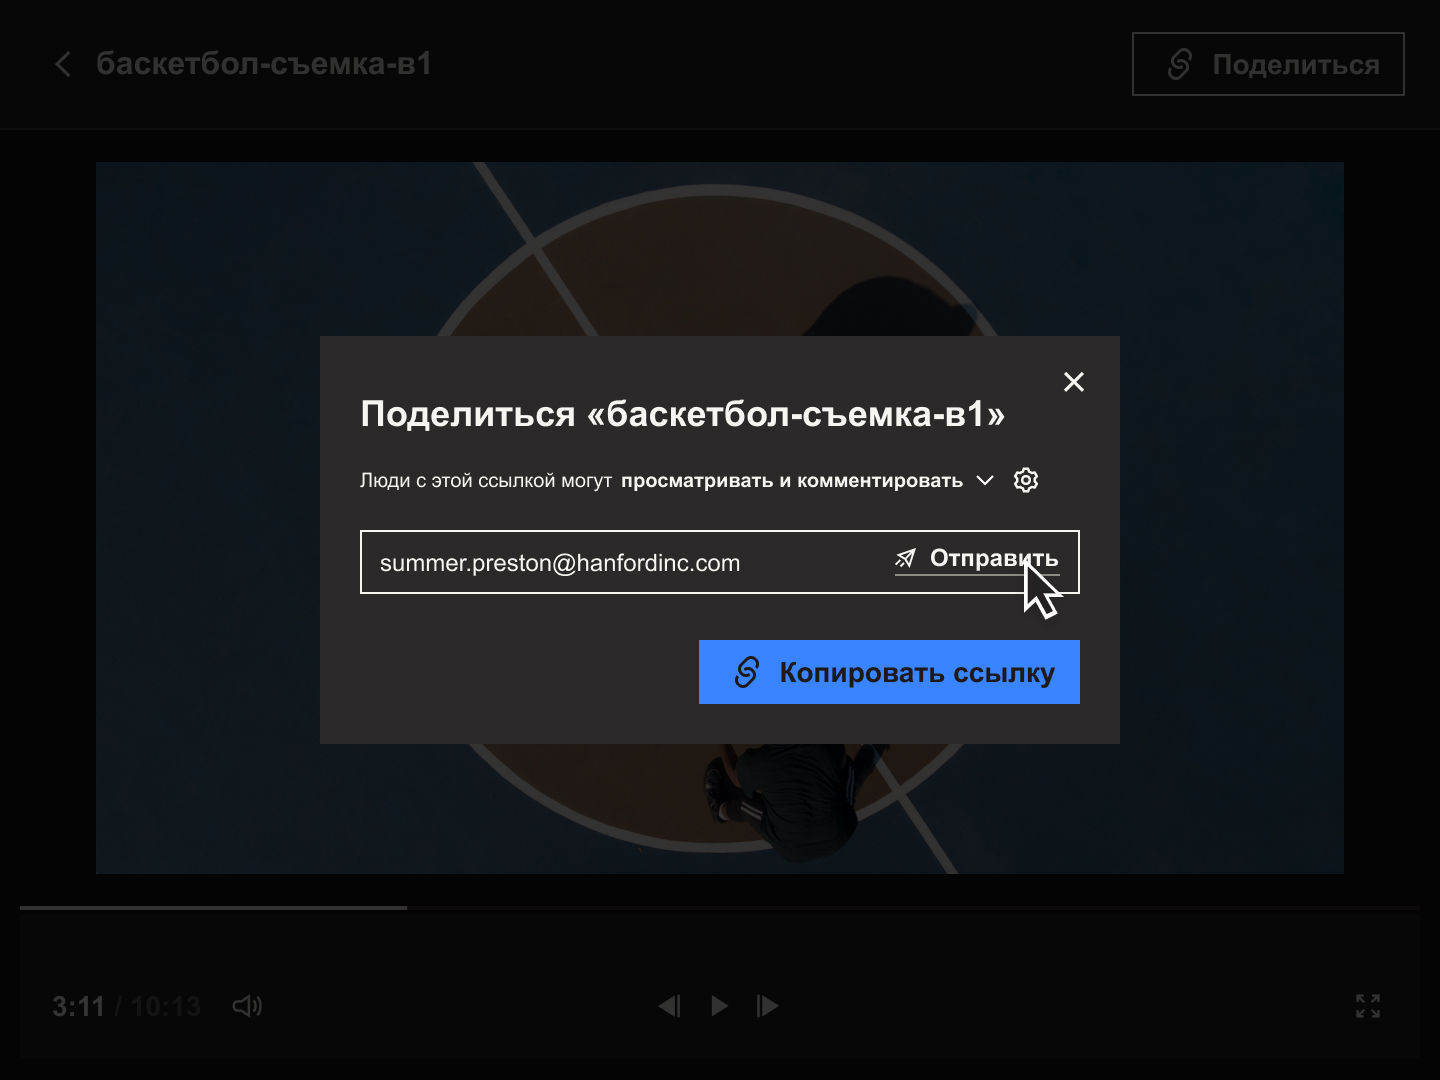 Пользовательский интерфейс Dropbox Replay, где показано, как поделиться ссылкой на видеоматериал с рецензентами.